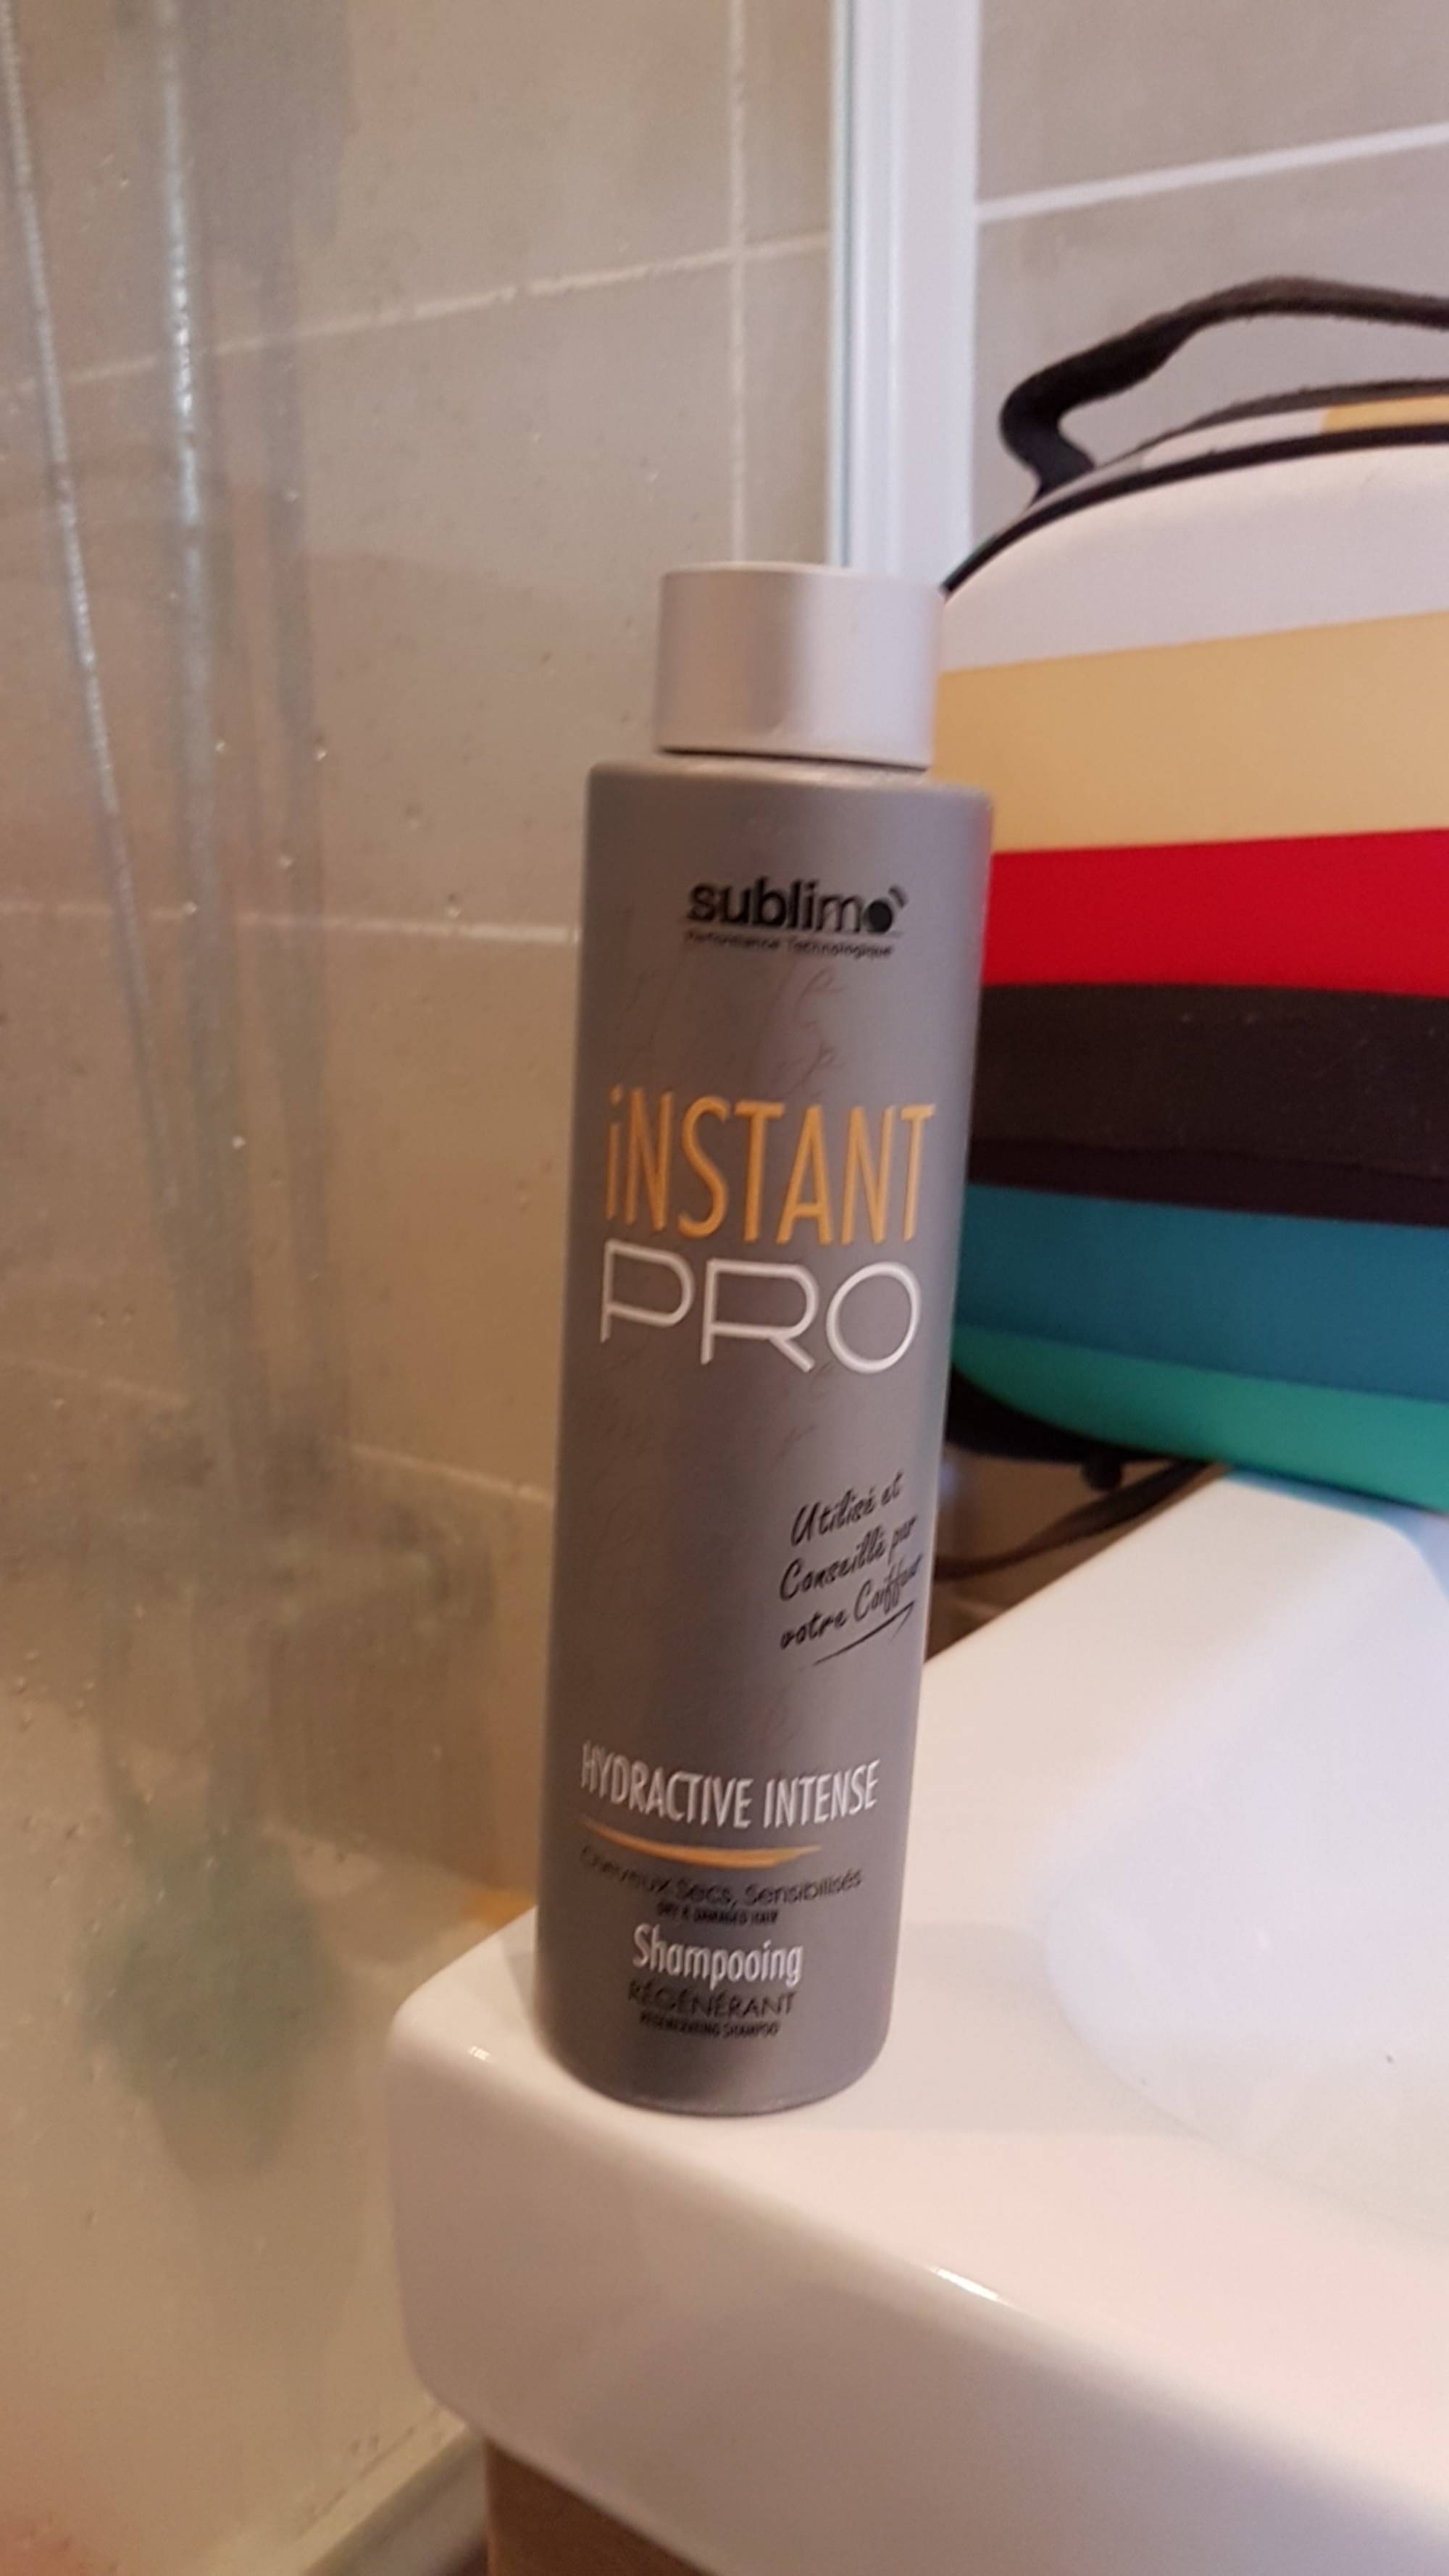 SUBLIMO - Instant pro hydractive intense - Shampooing régénérant